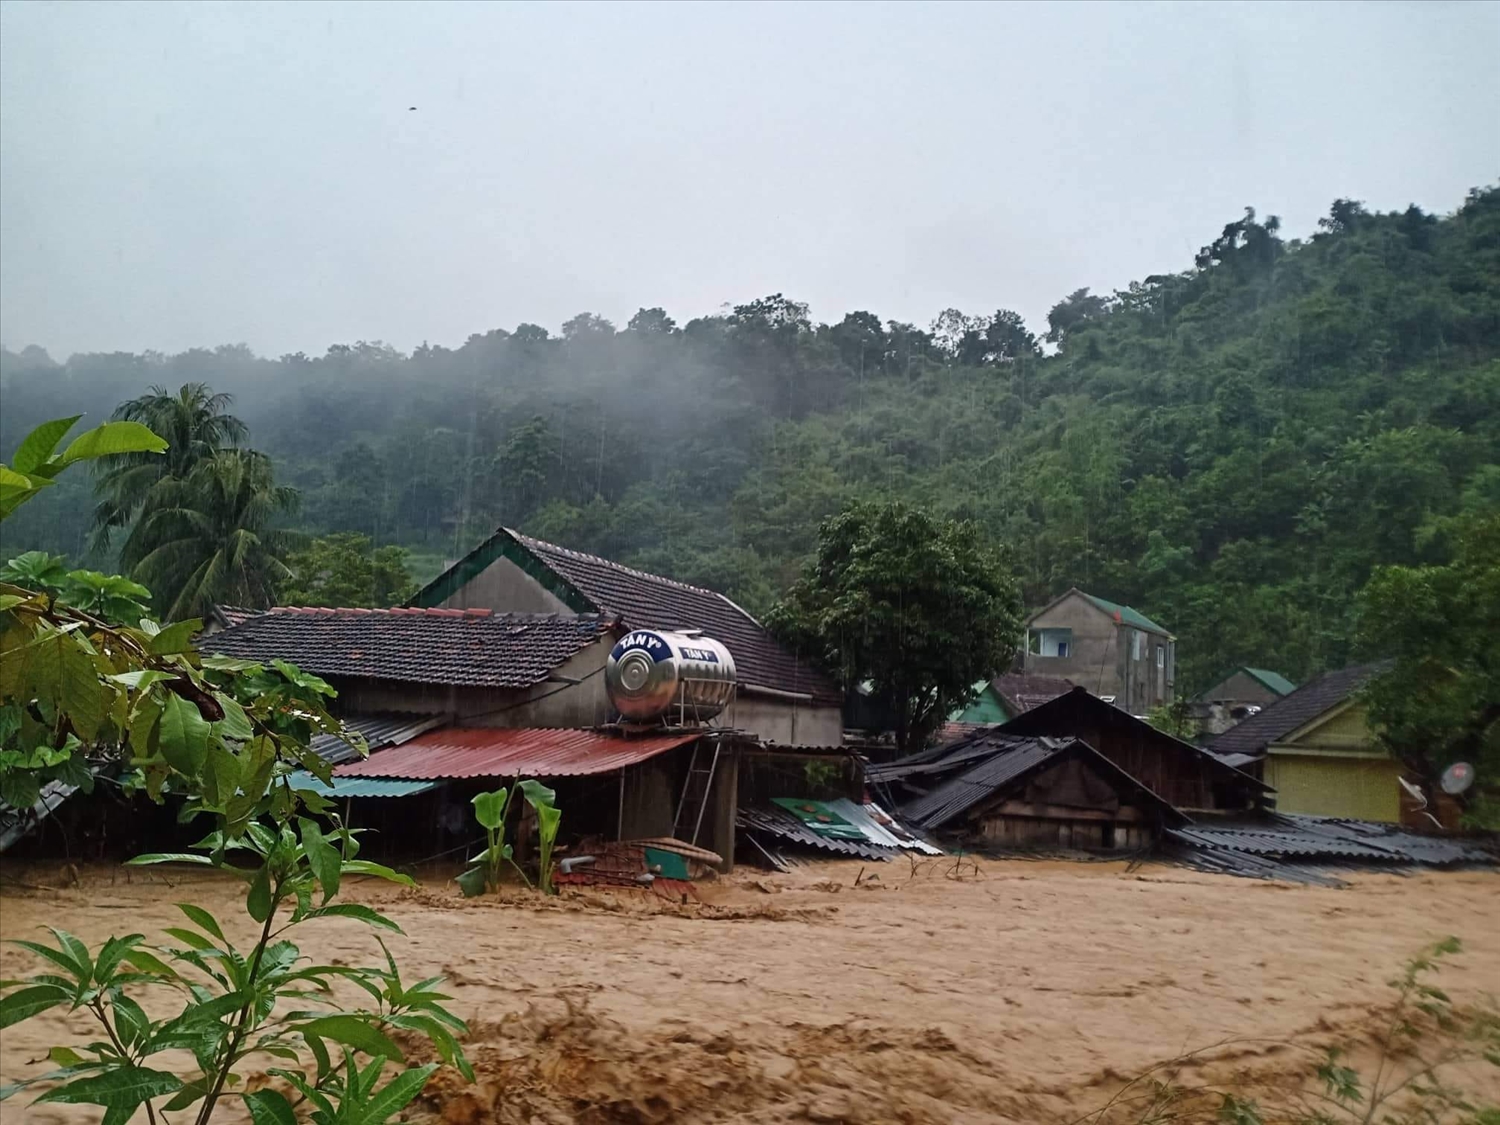 Hình ảnh: Đề phòng lũ quét, sạt lở đất tại các tỉnh Yên Bái, Lào Cai, Quảng Ninh số 1